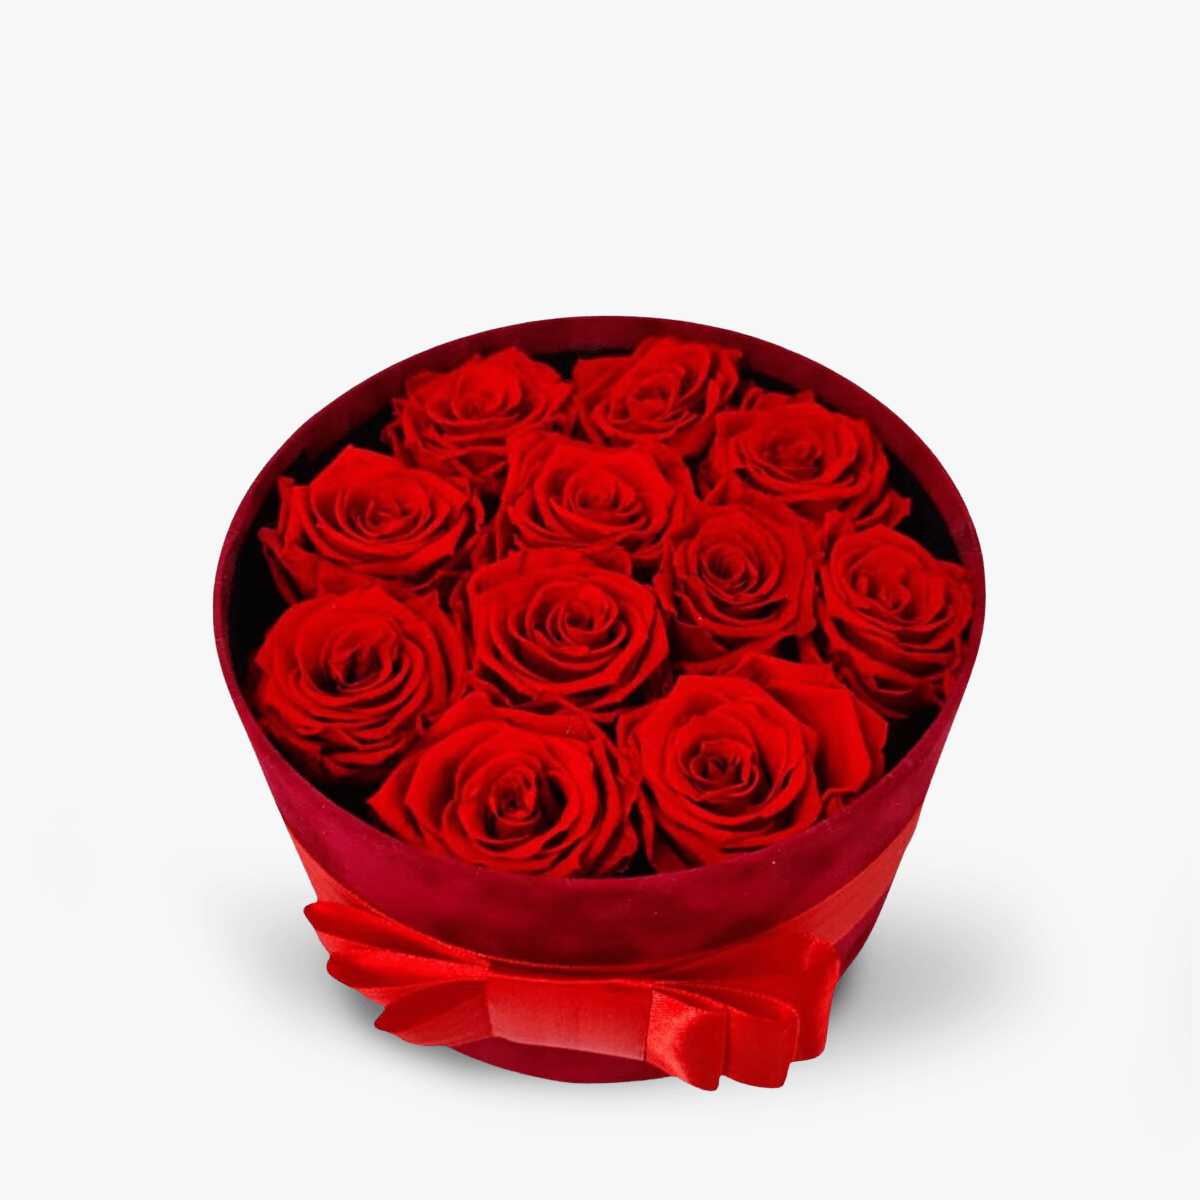 Cutie cu 11 trandafiri rosii, criogenati – Standard criogenati